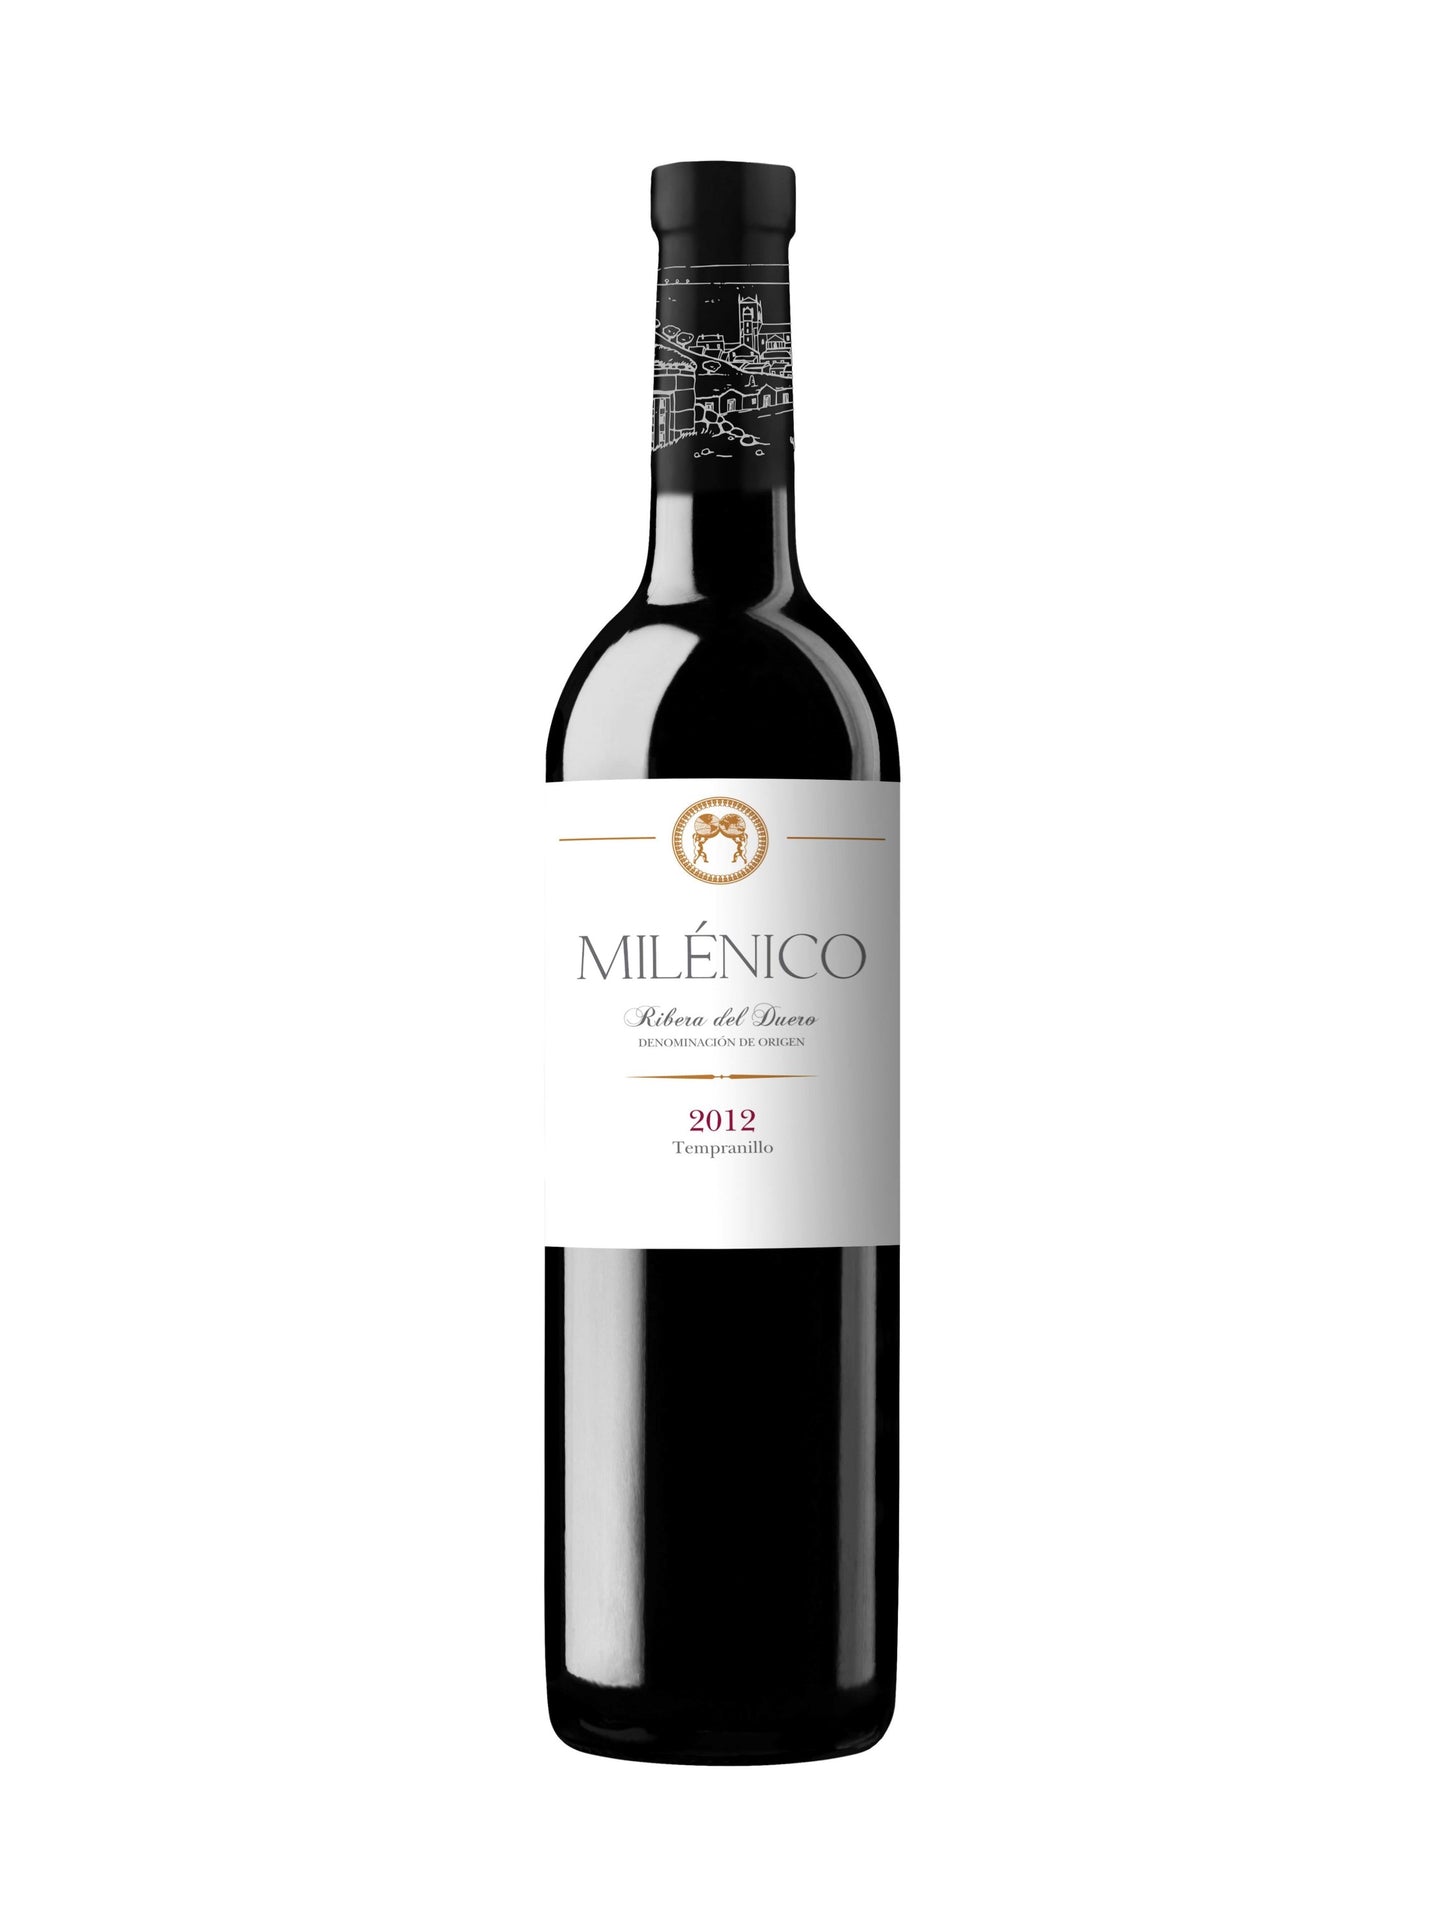 Bodega y Vinedos Milenico Ribera del Duero 2012 Tempranillo - 93 Pts. Wine & Spirits